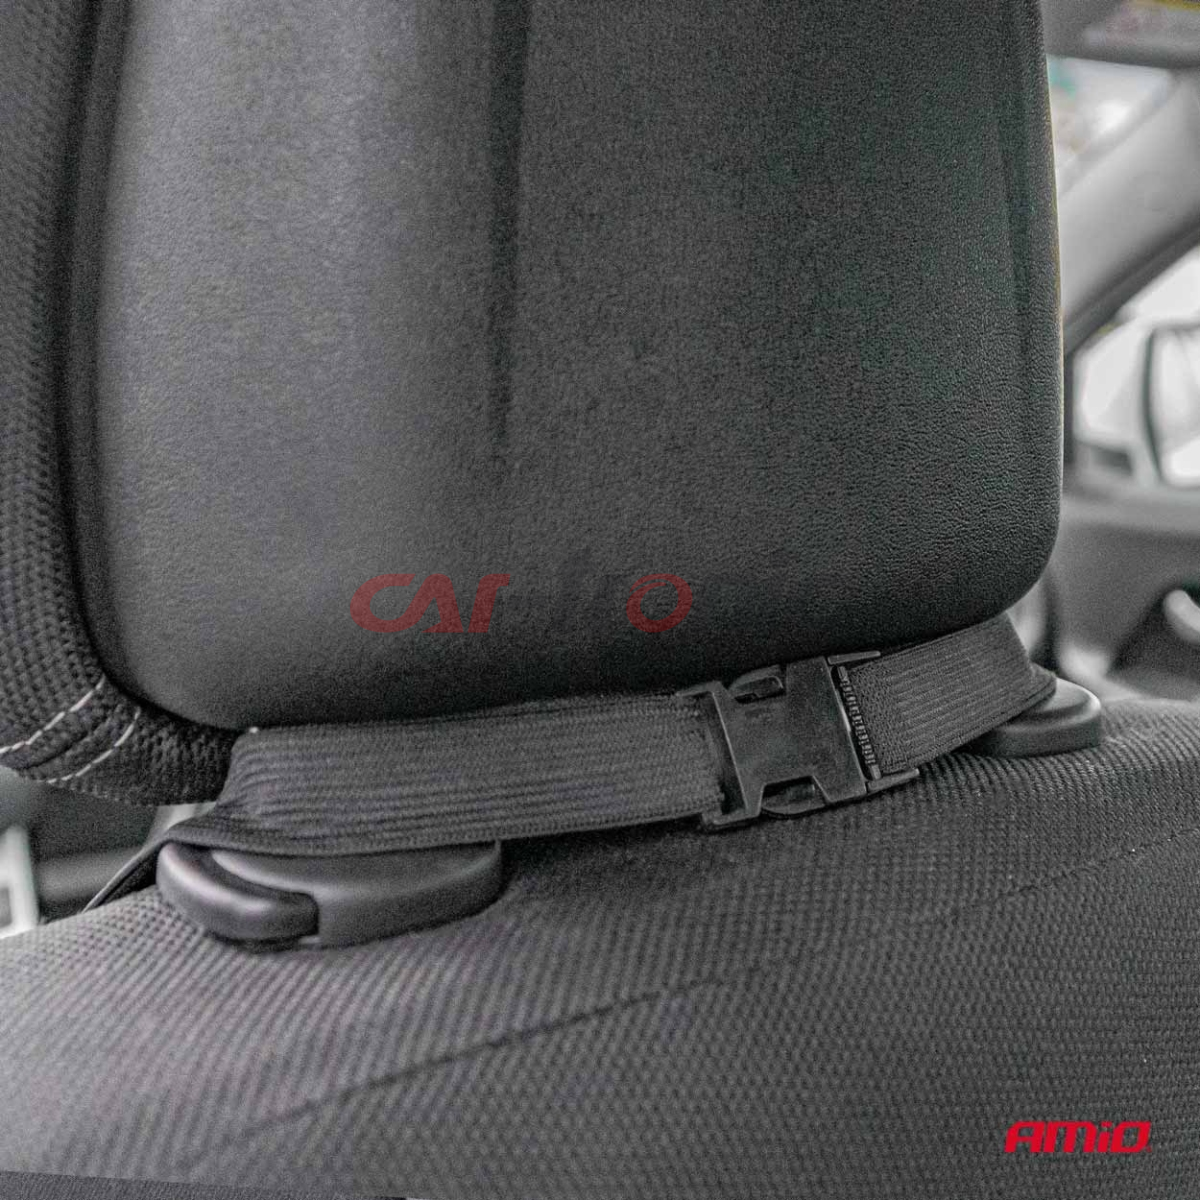 Mata grzewcza podgrzewana na fotel siedzenie do samochodu 12V AMIO-03623